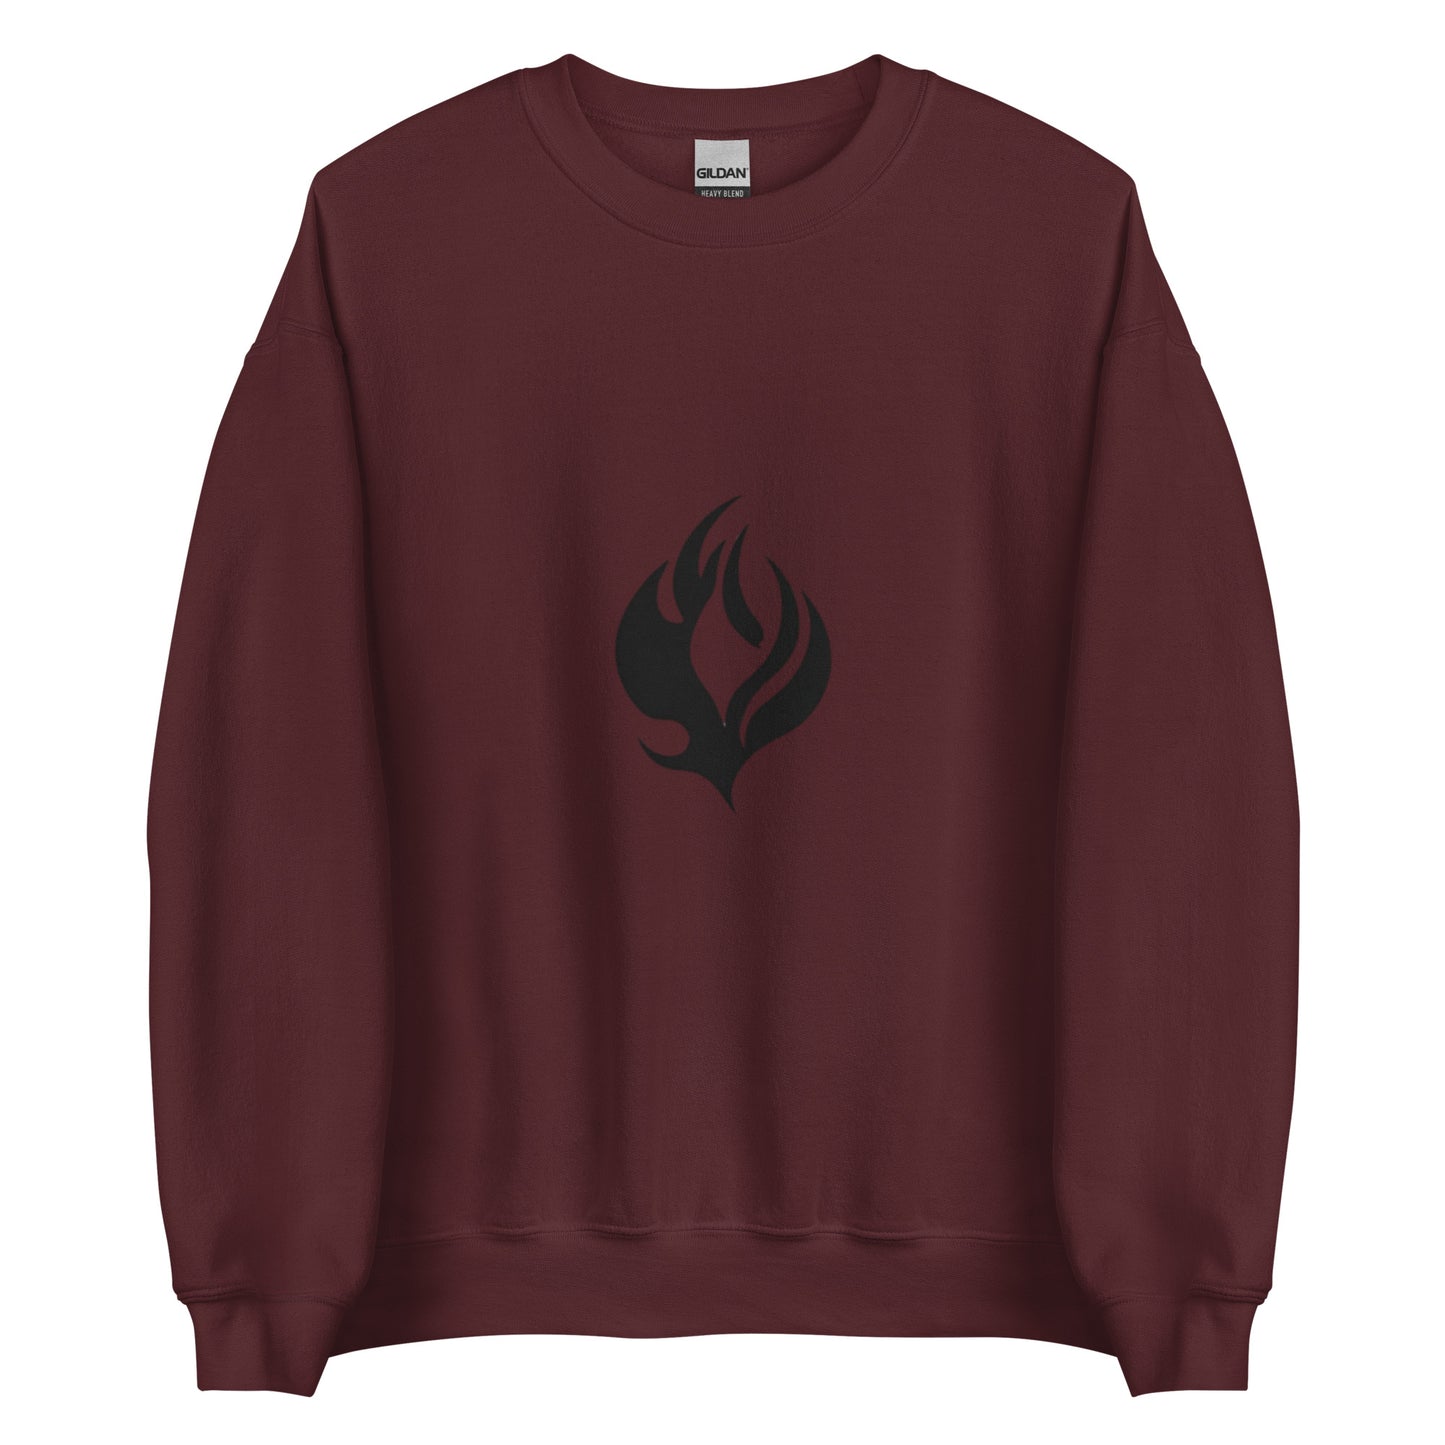 Flame - Sweatshirt